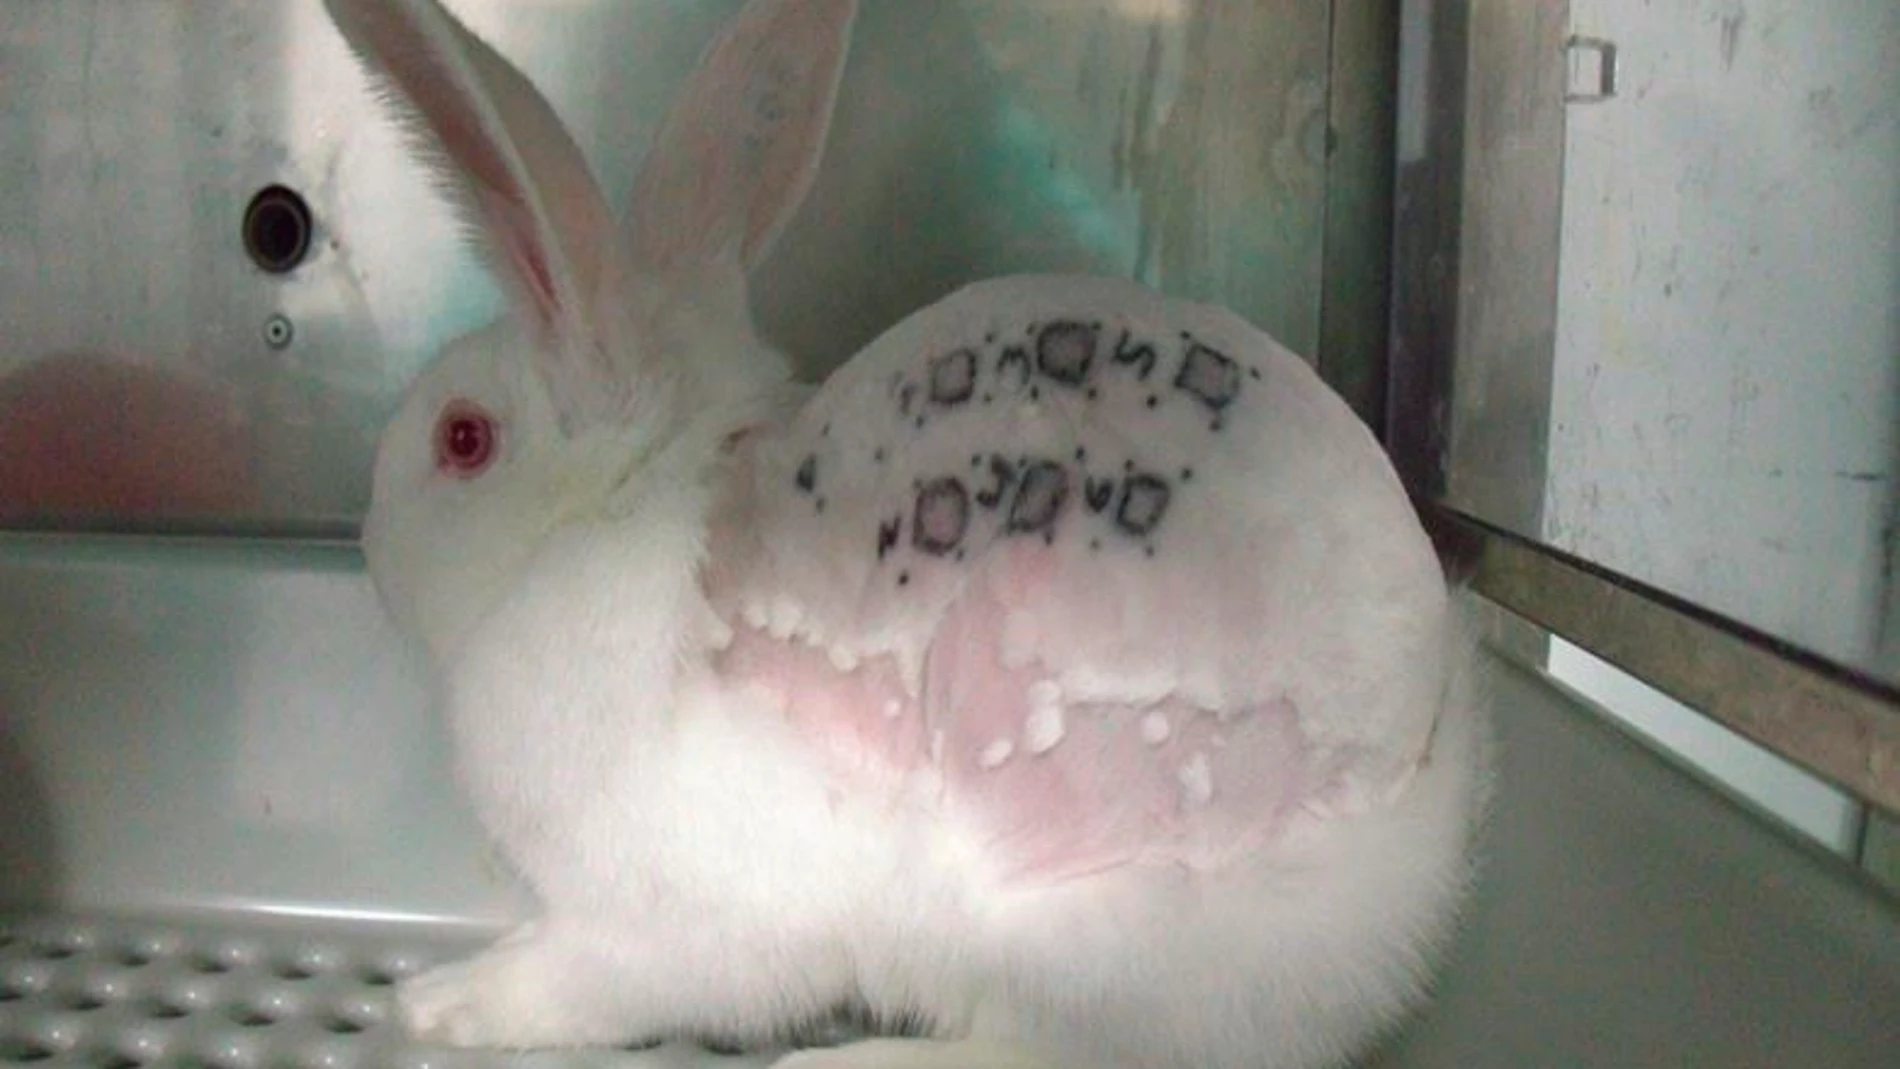 Imagen cedida del supuesto maltrato animal en un laboratorio de investigación de Madrid.